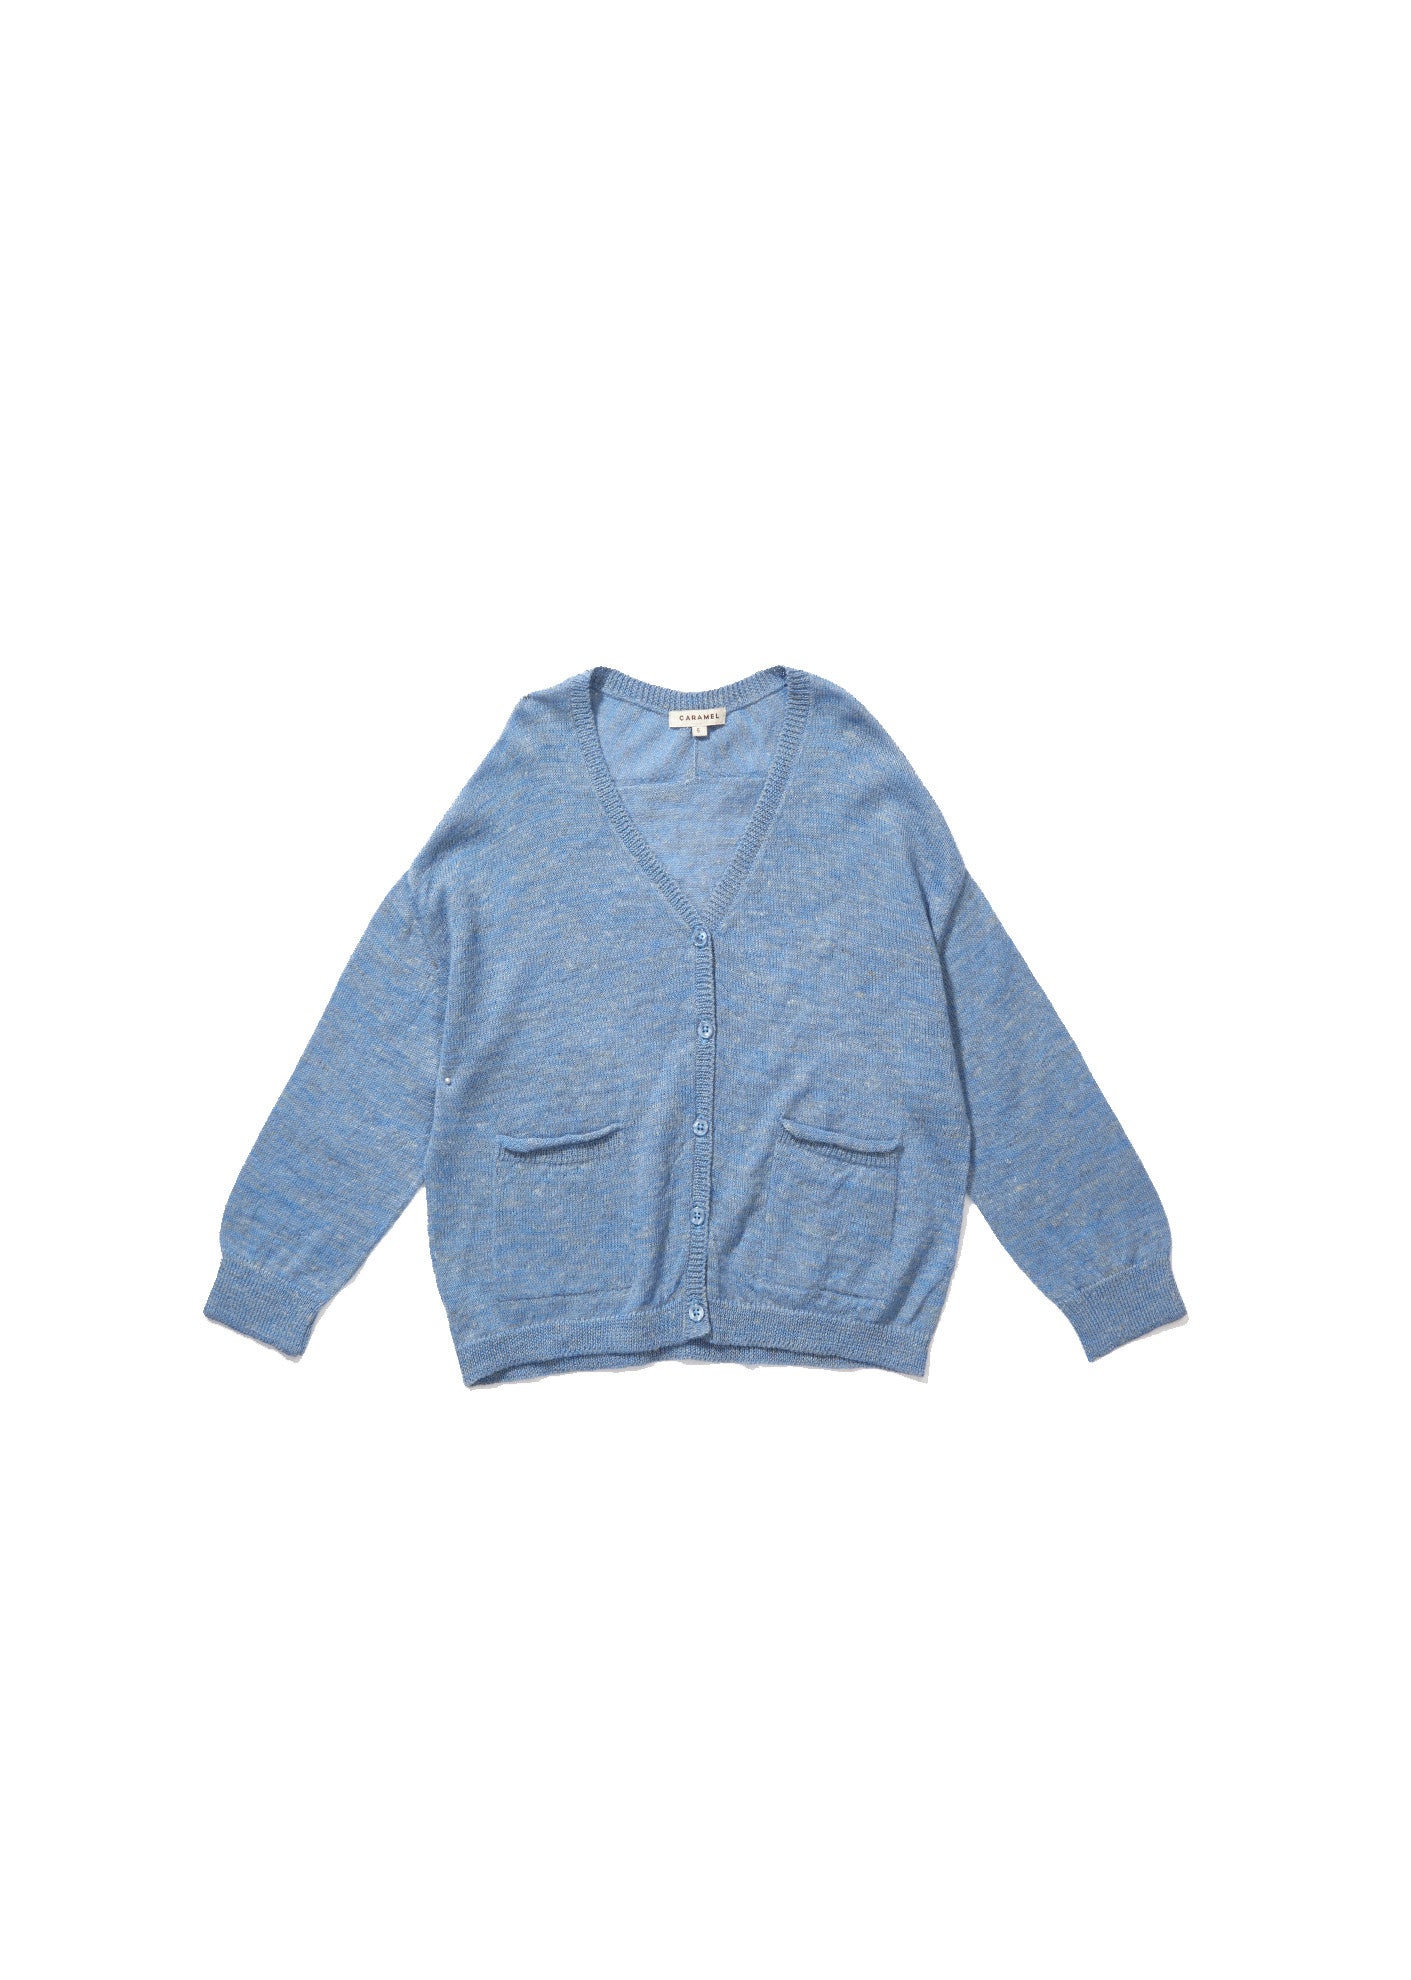 Boys & Girls Blue Knitted Cardigan